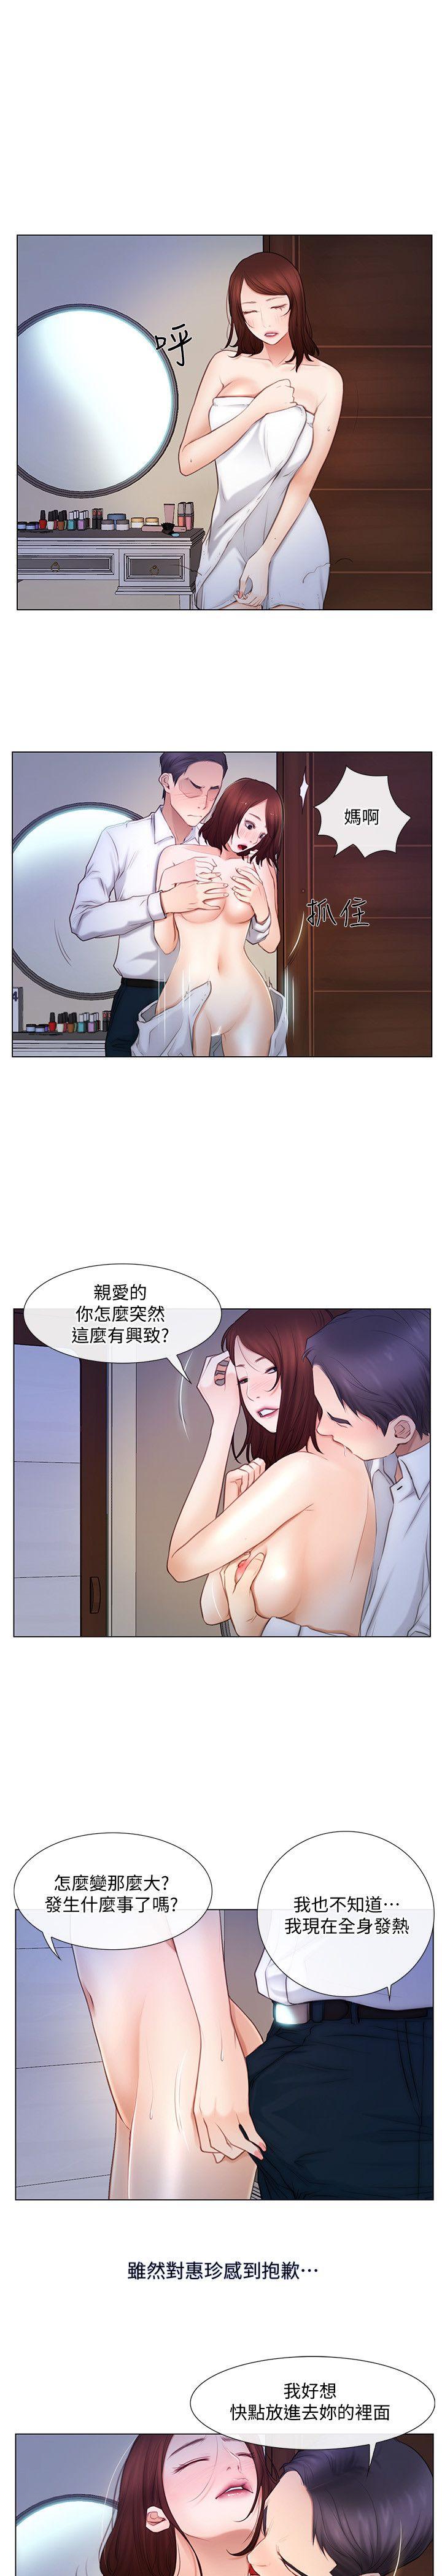 韩国污漫画 人夫的悸動 第6话-没穿内裤和自慰 1